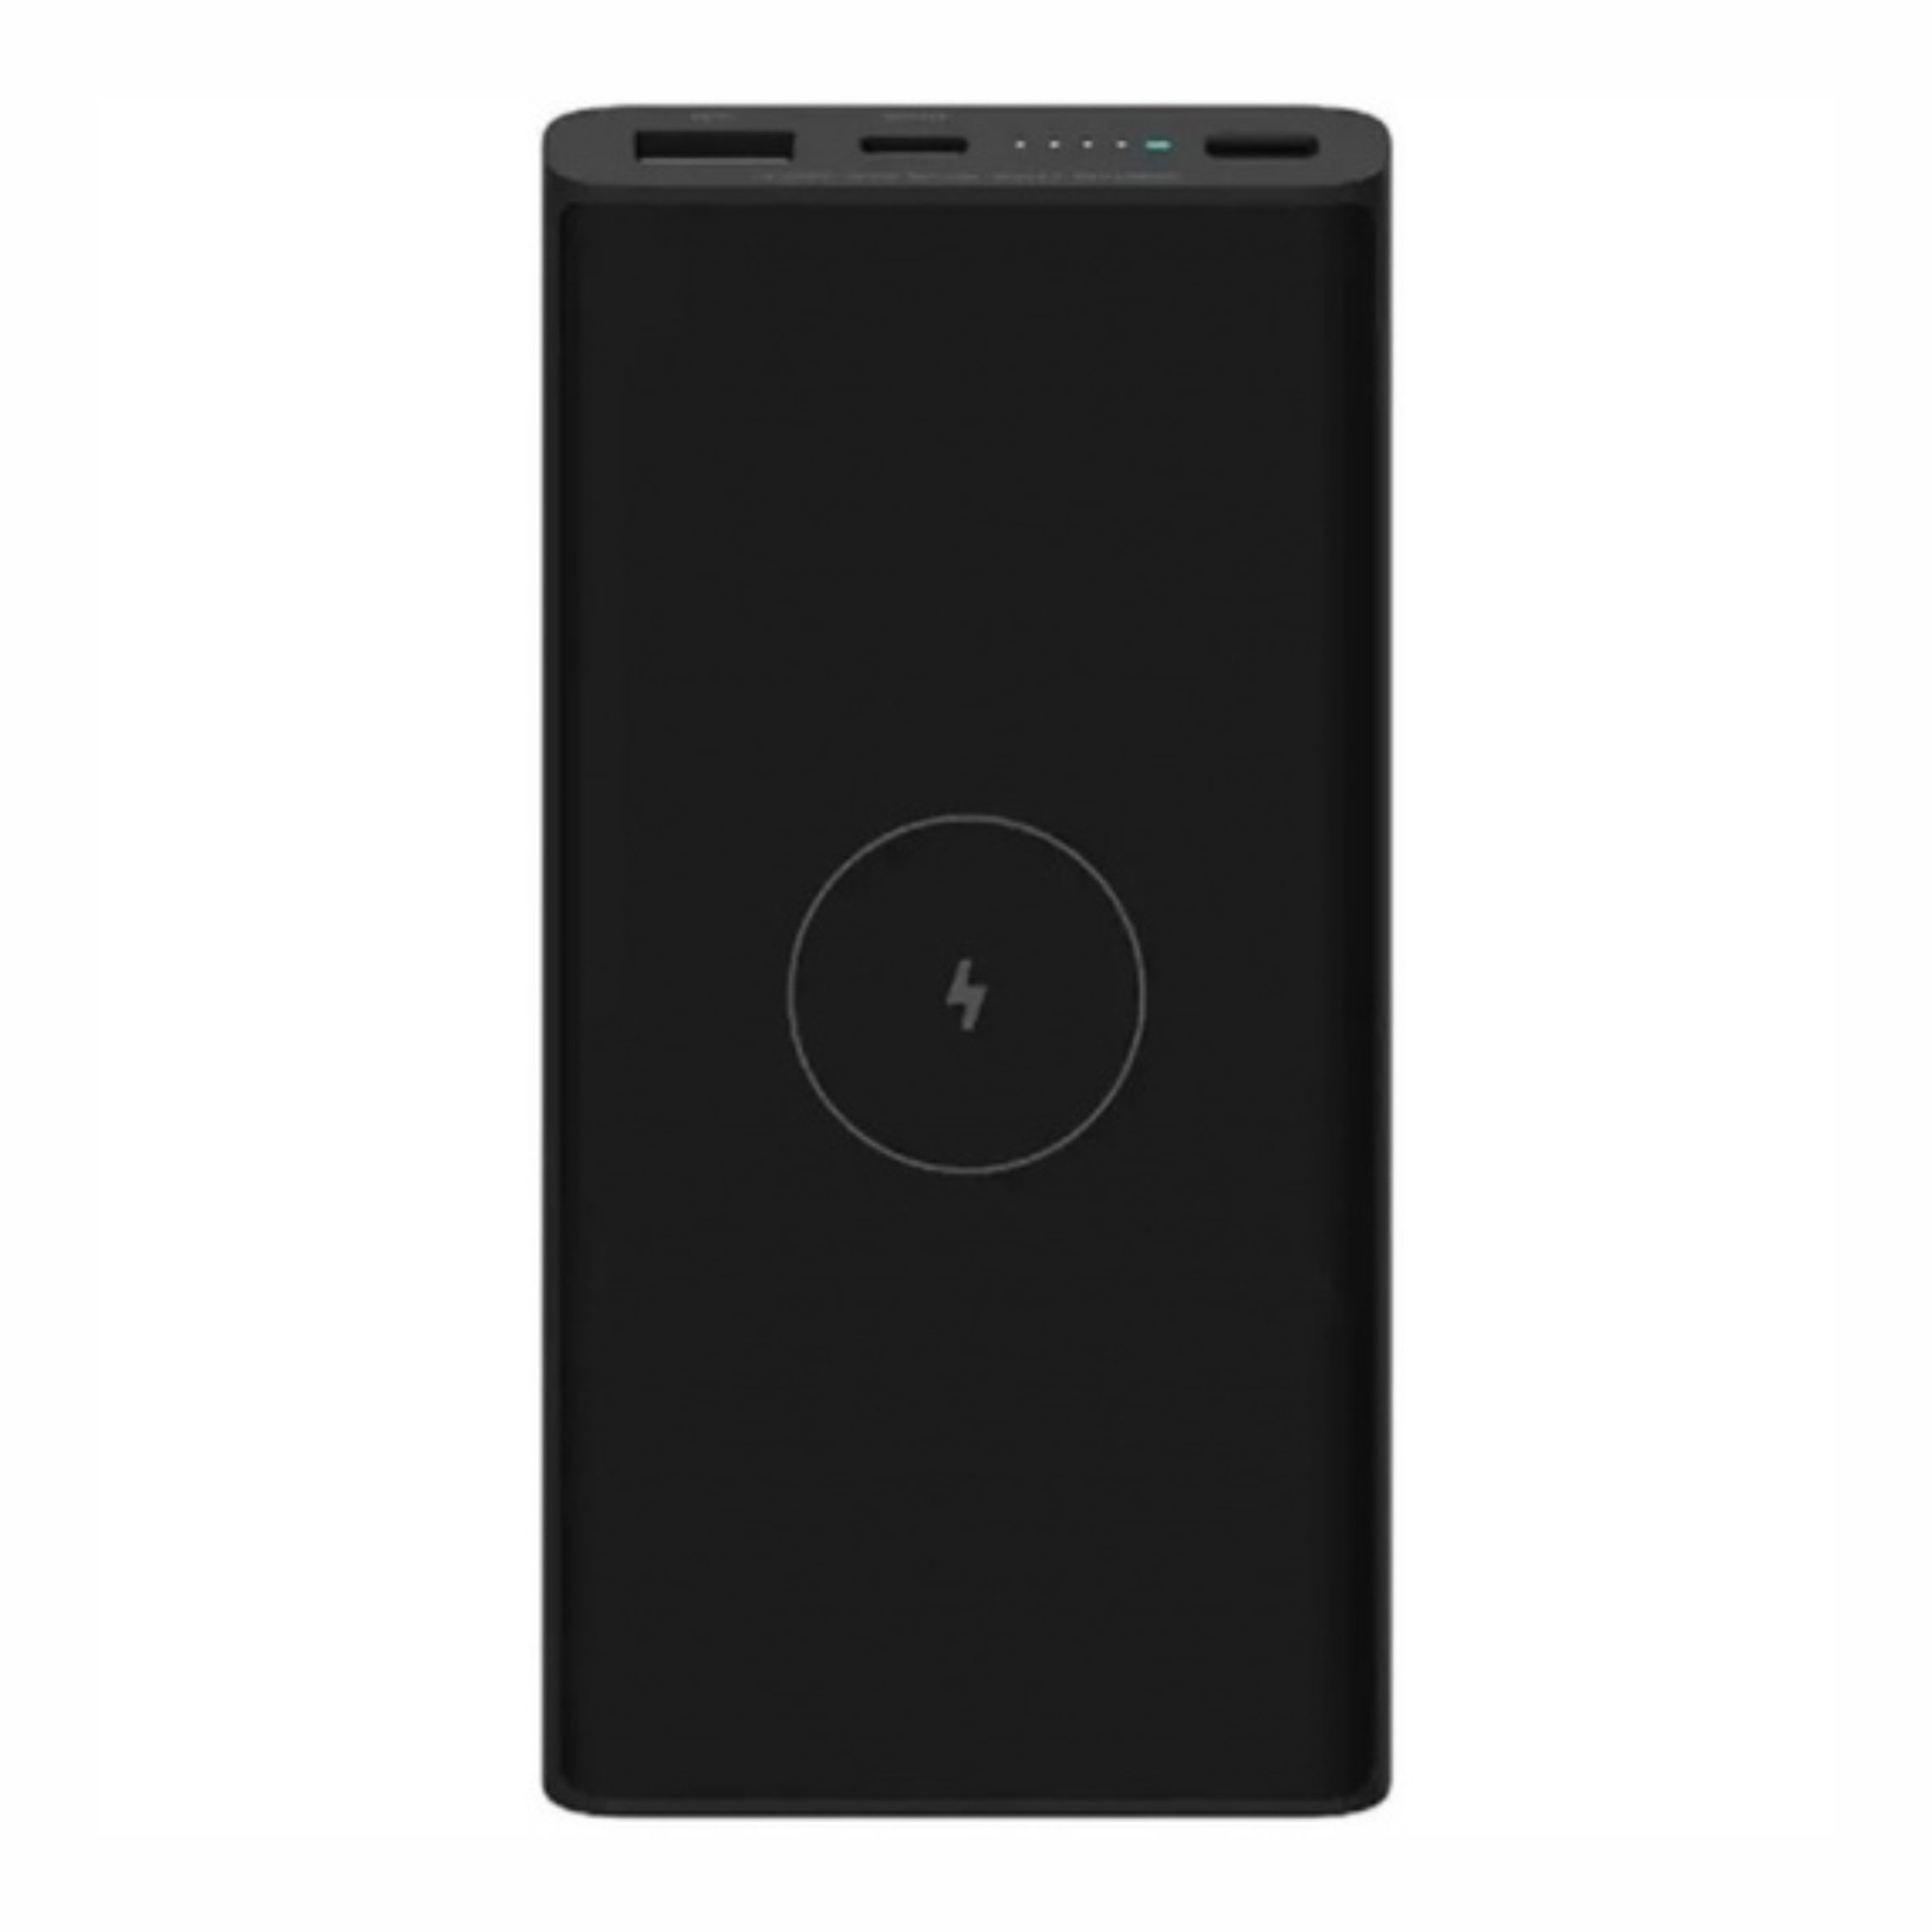 ПЗУ Xiaomi 10W Wireless Power Bank, черный, черный, пластик